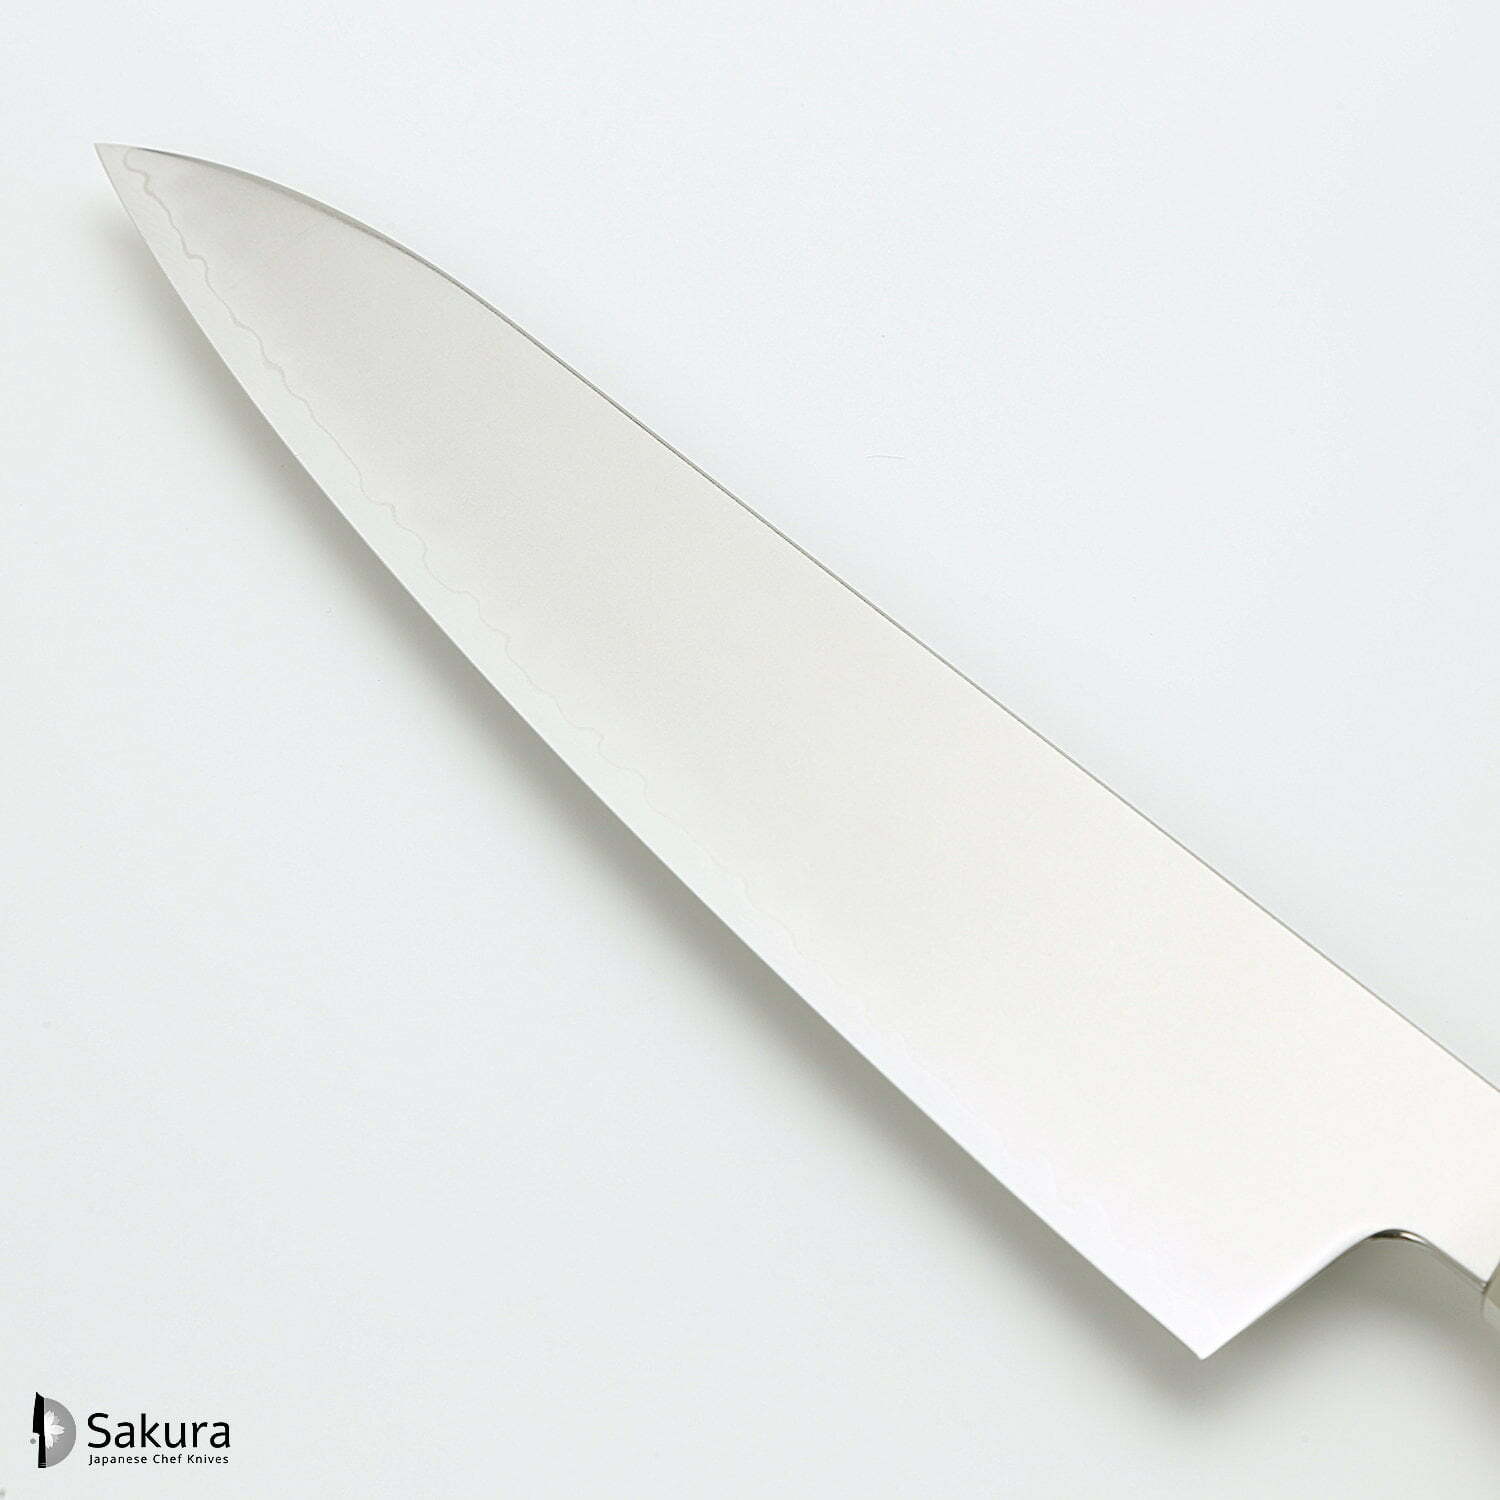 סכין שף רב-תכליתית גִּיוּטוֹ 210מ״מ מחושלת בעבודת יד 3 שכבות: פלדת פחמן יפנית מתקדמת מסוג R2/SG2 עטופה פלדת אל-חלד גימור מט מלוטש מקוסטה זאנמאיי יפן ZRR-1205G